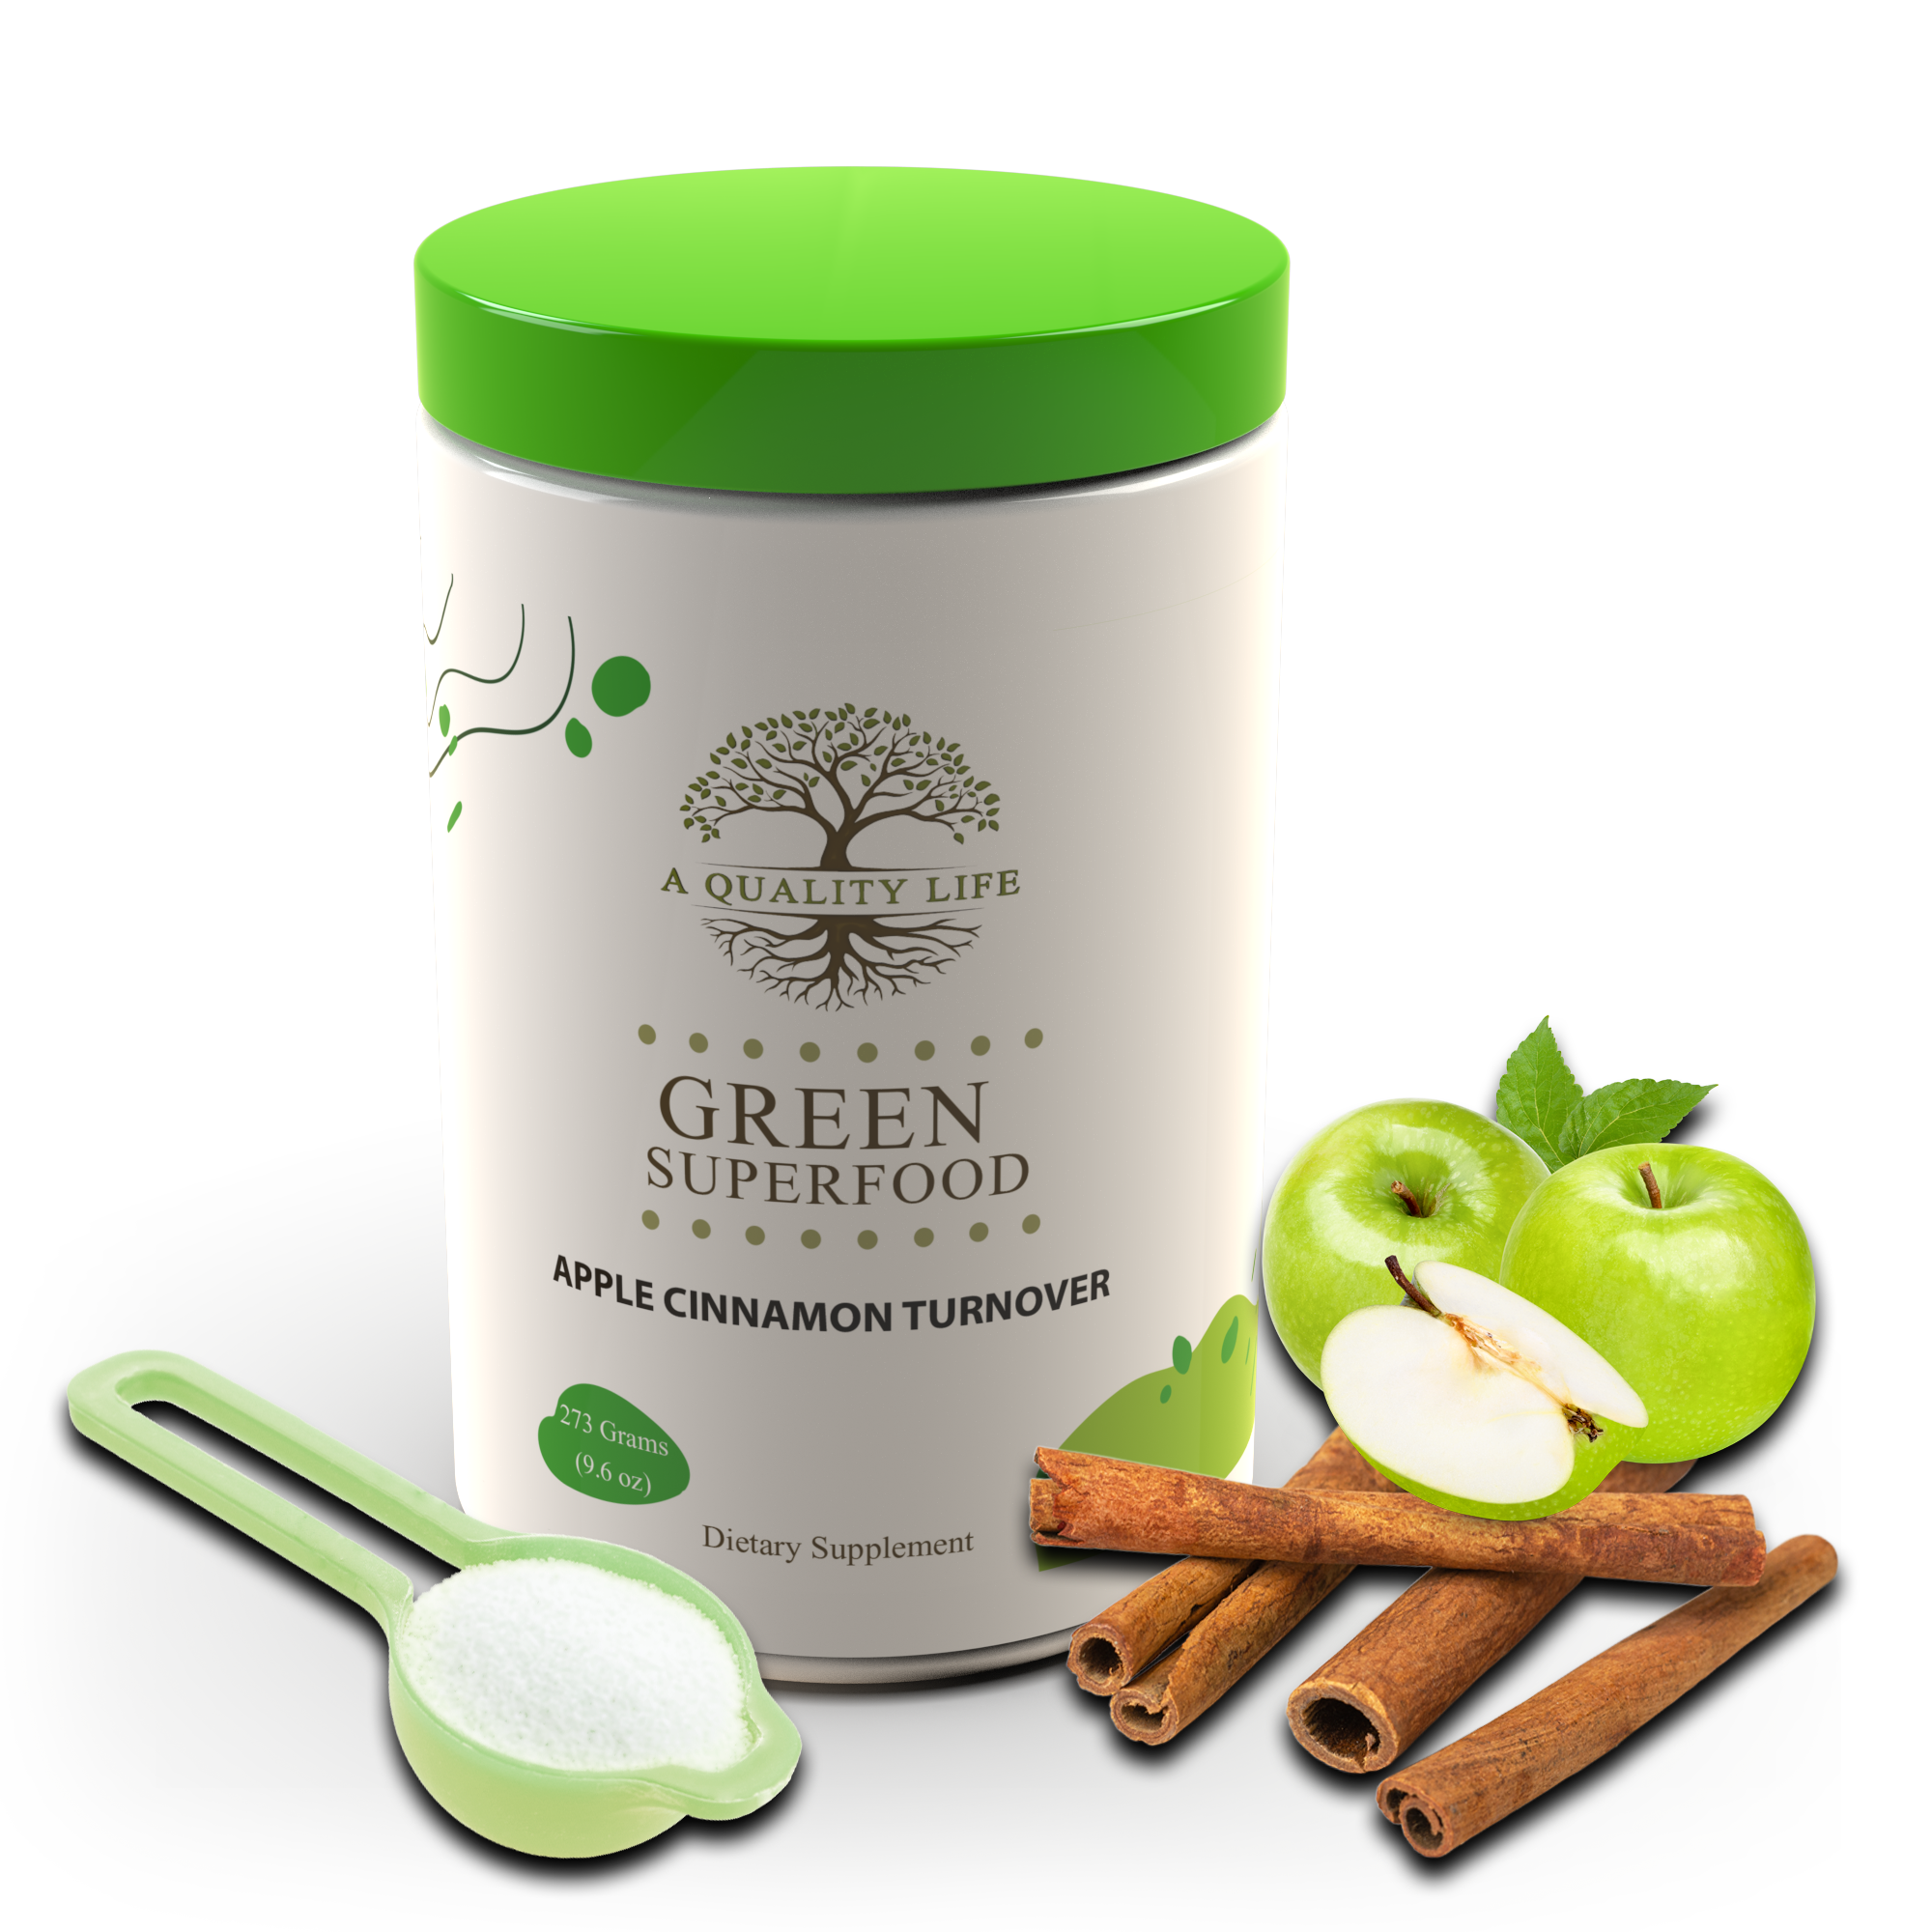 Green Superfood - Apple Cinnamon Turnover